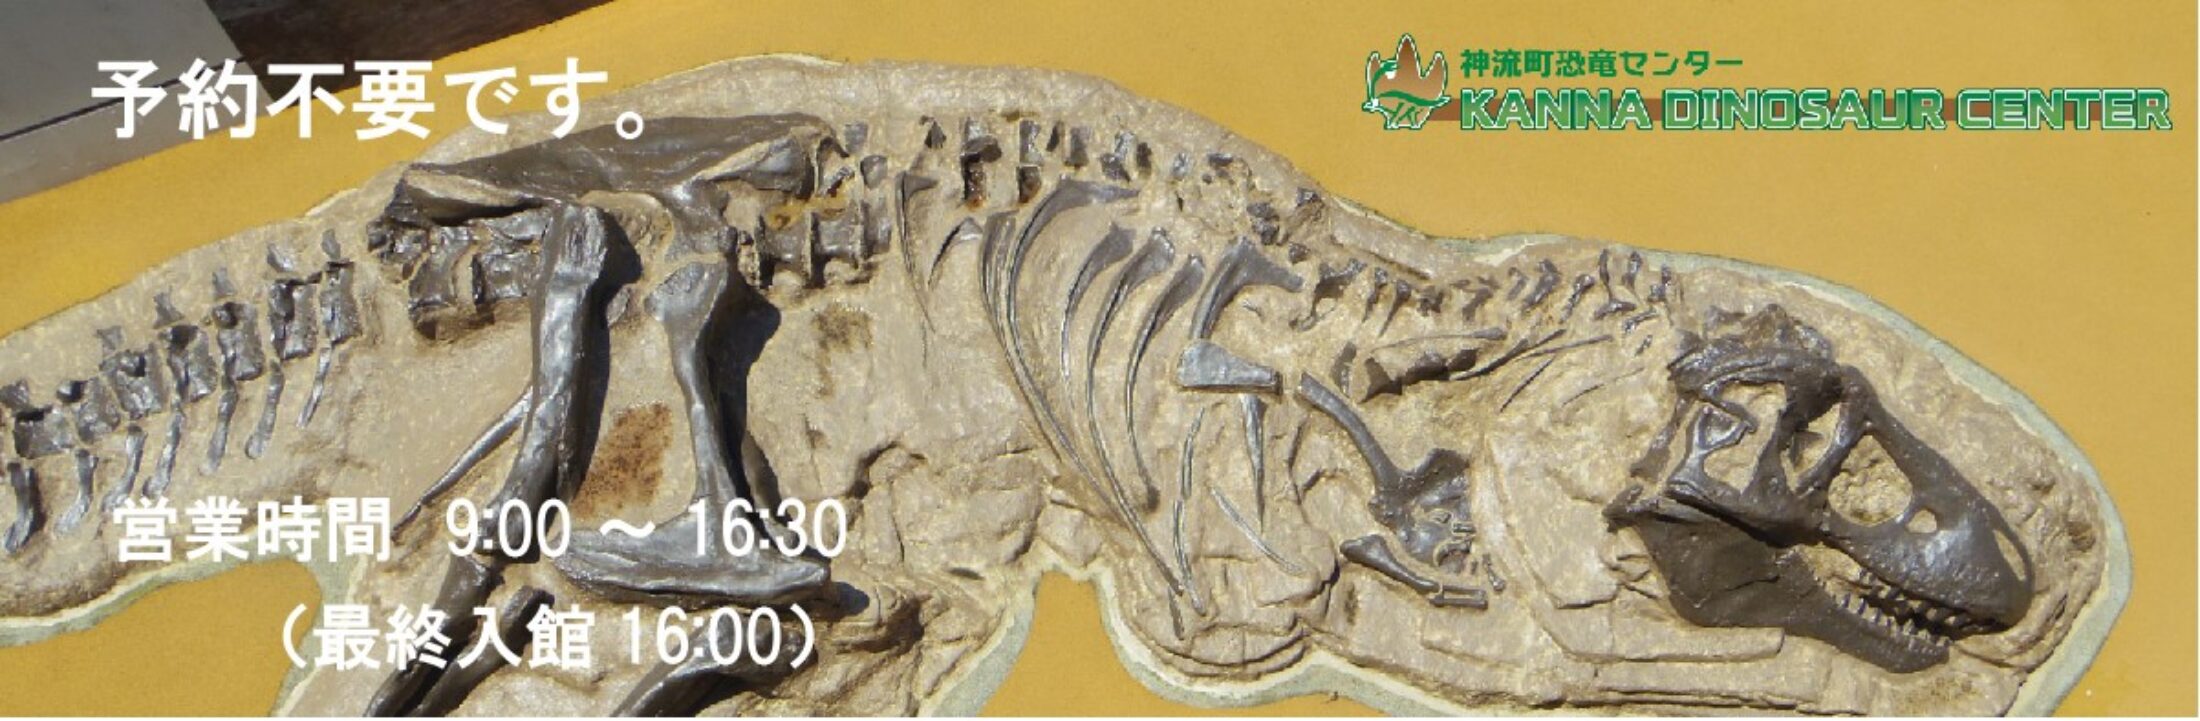 神流町恐竜センター 恐竜骨格の展示や化石発掘体験ができる